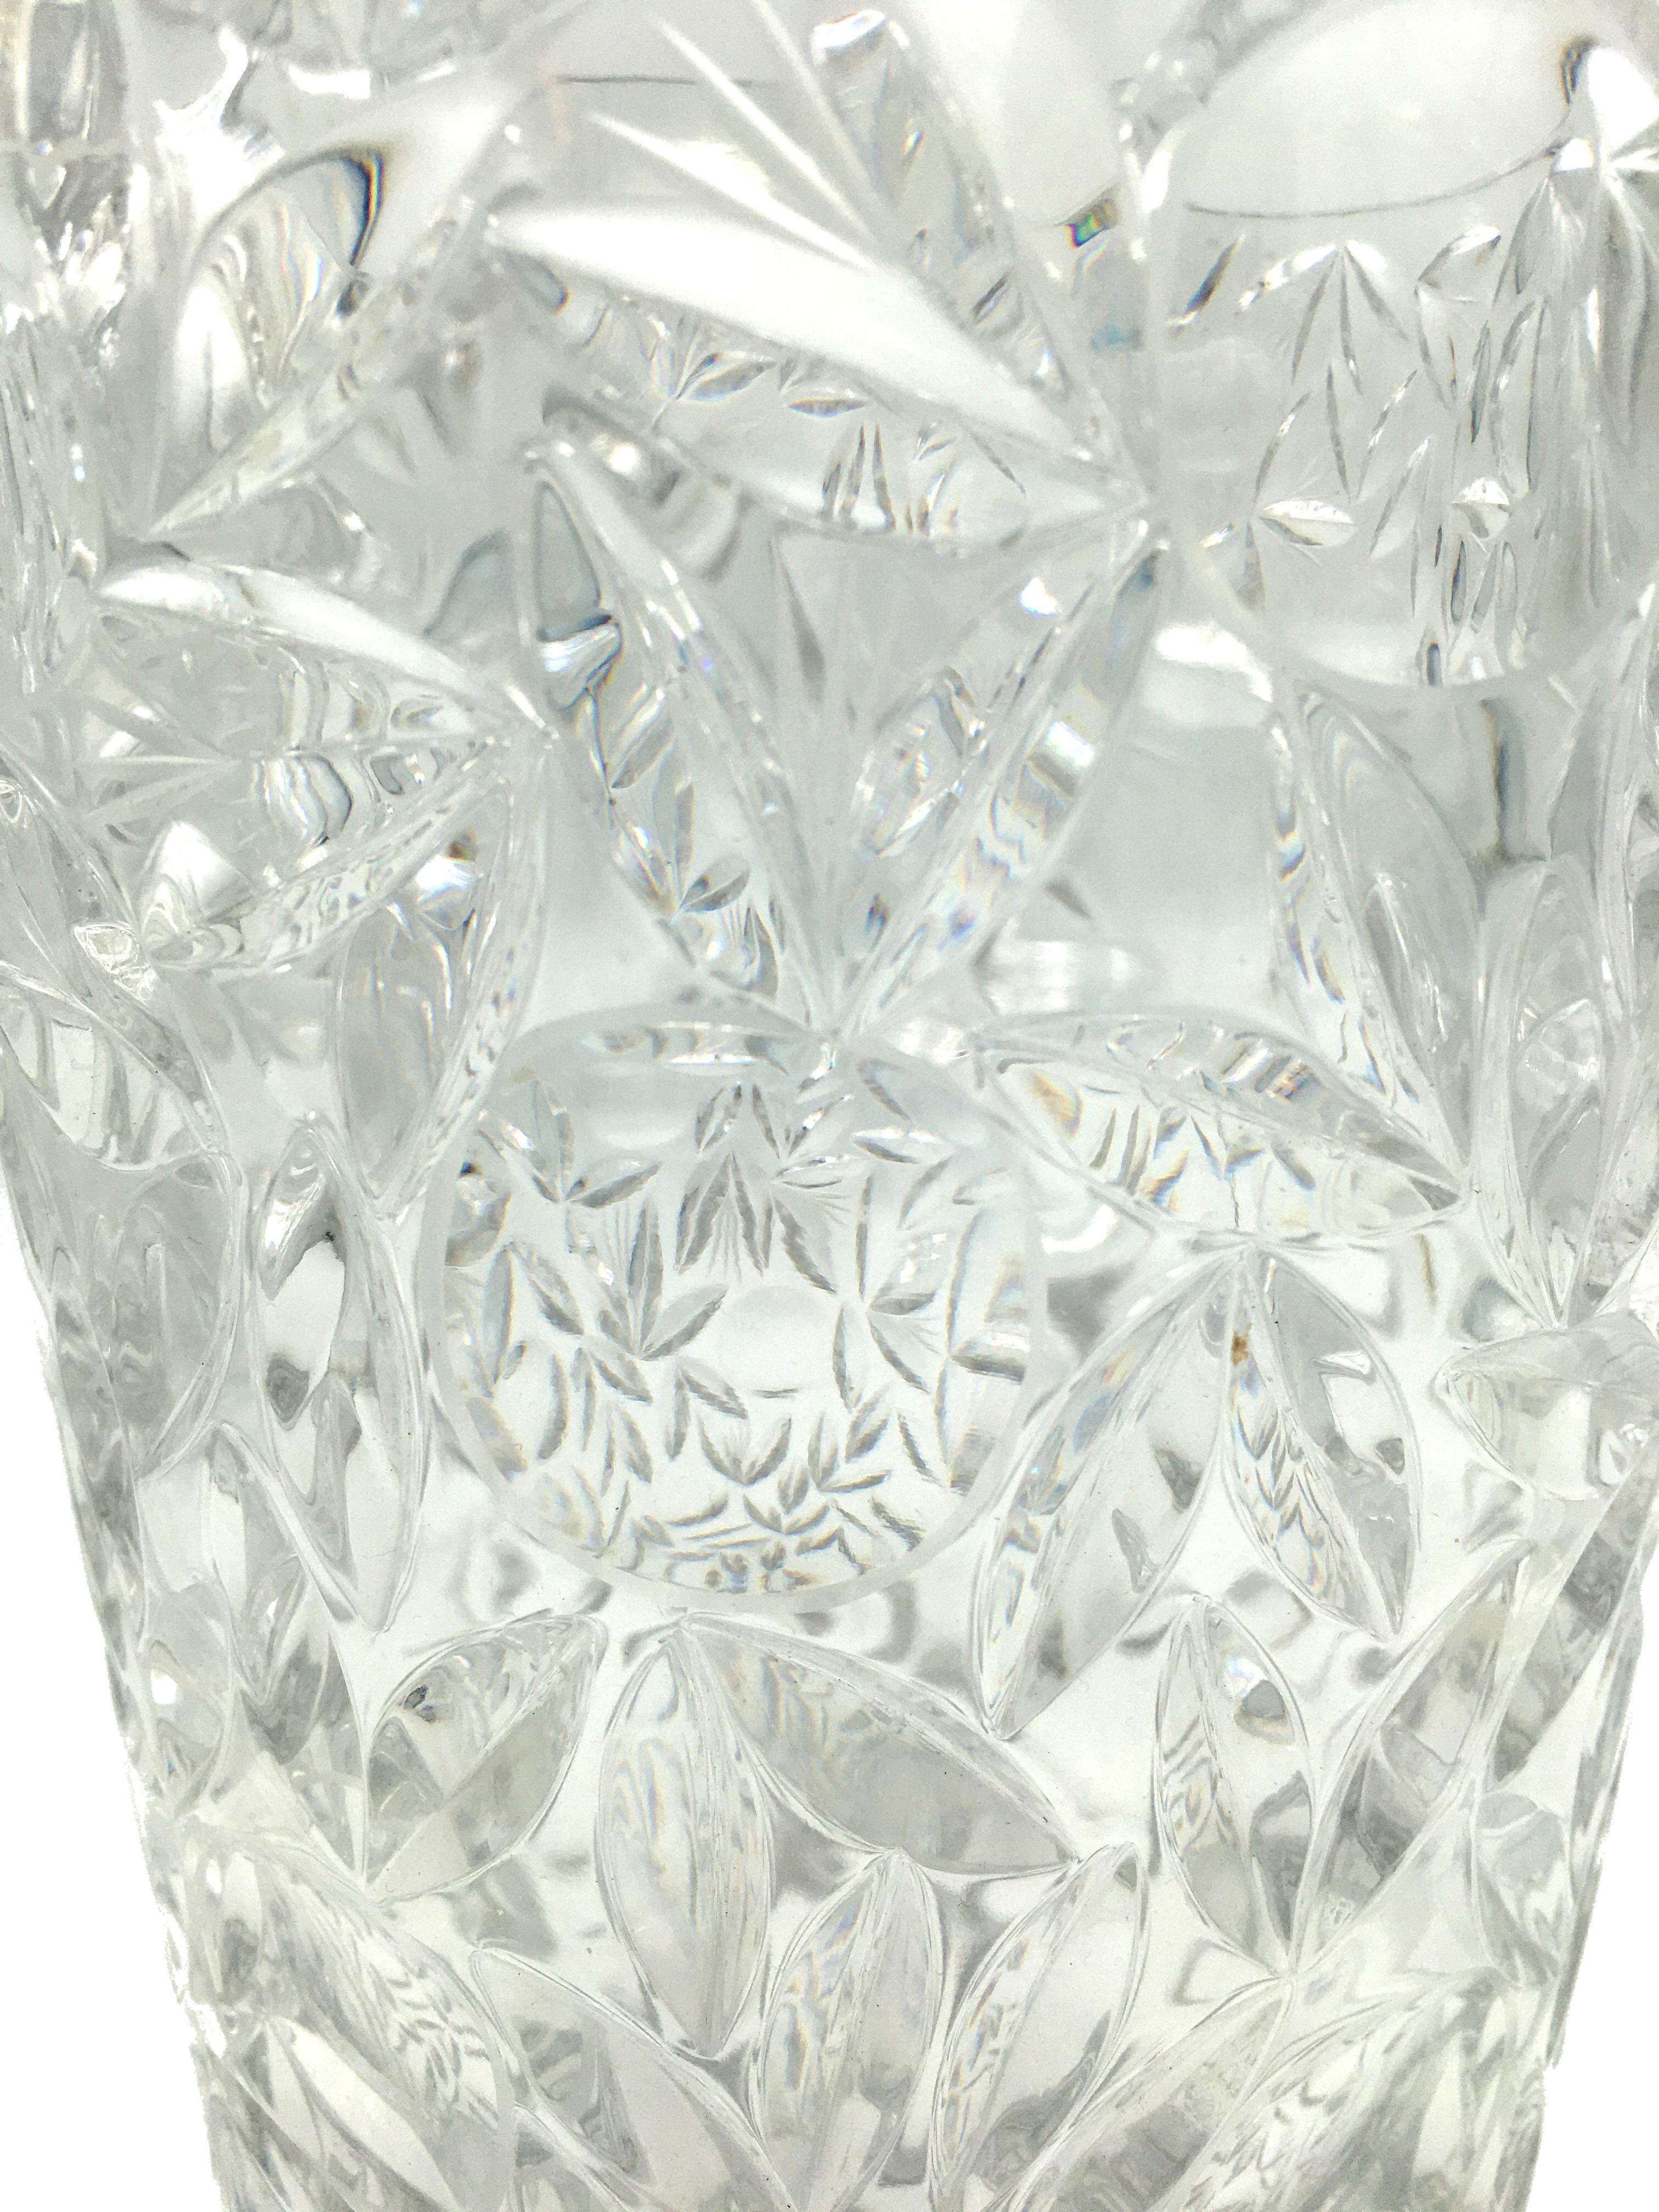 Mid-20th Century Art Deco Large Vintage Lead Crystal Cut Vase, circa 1940